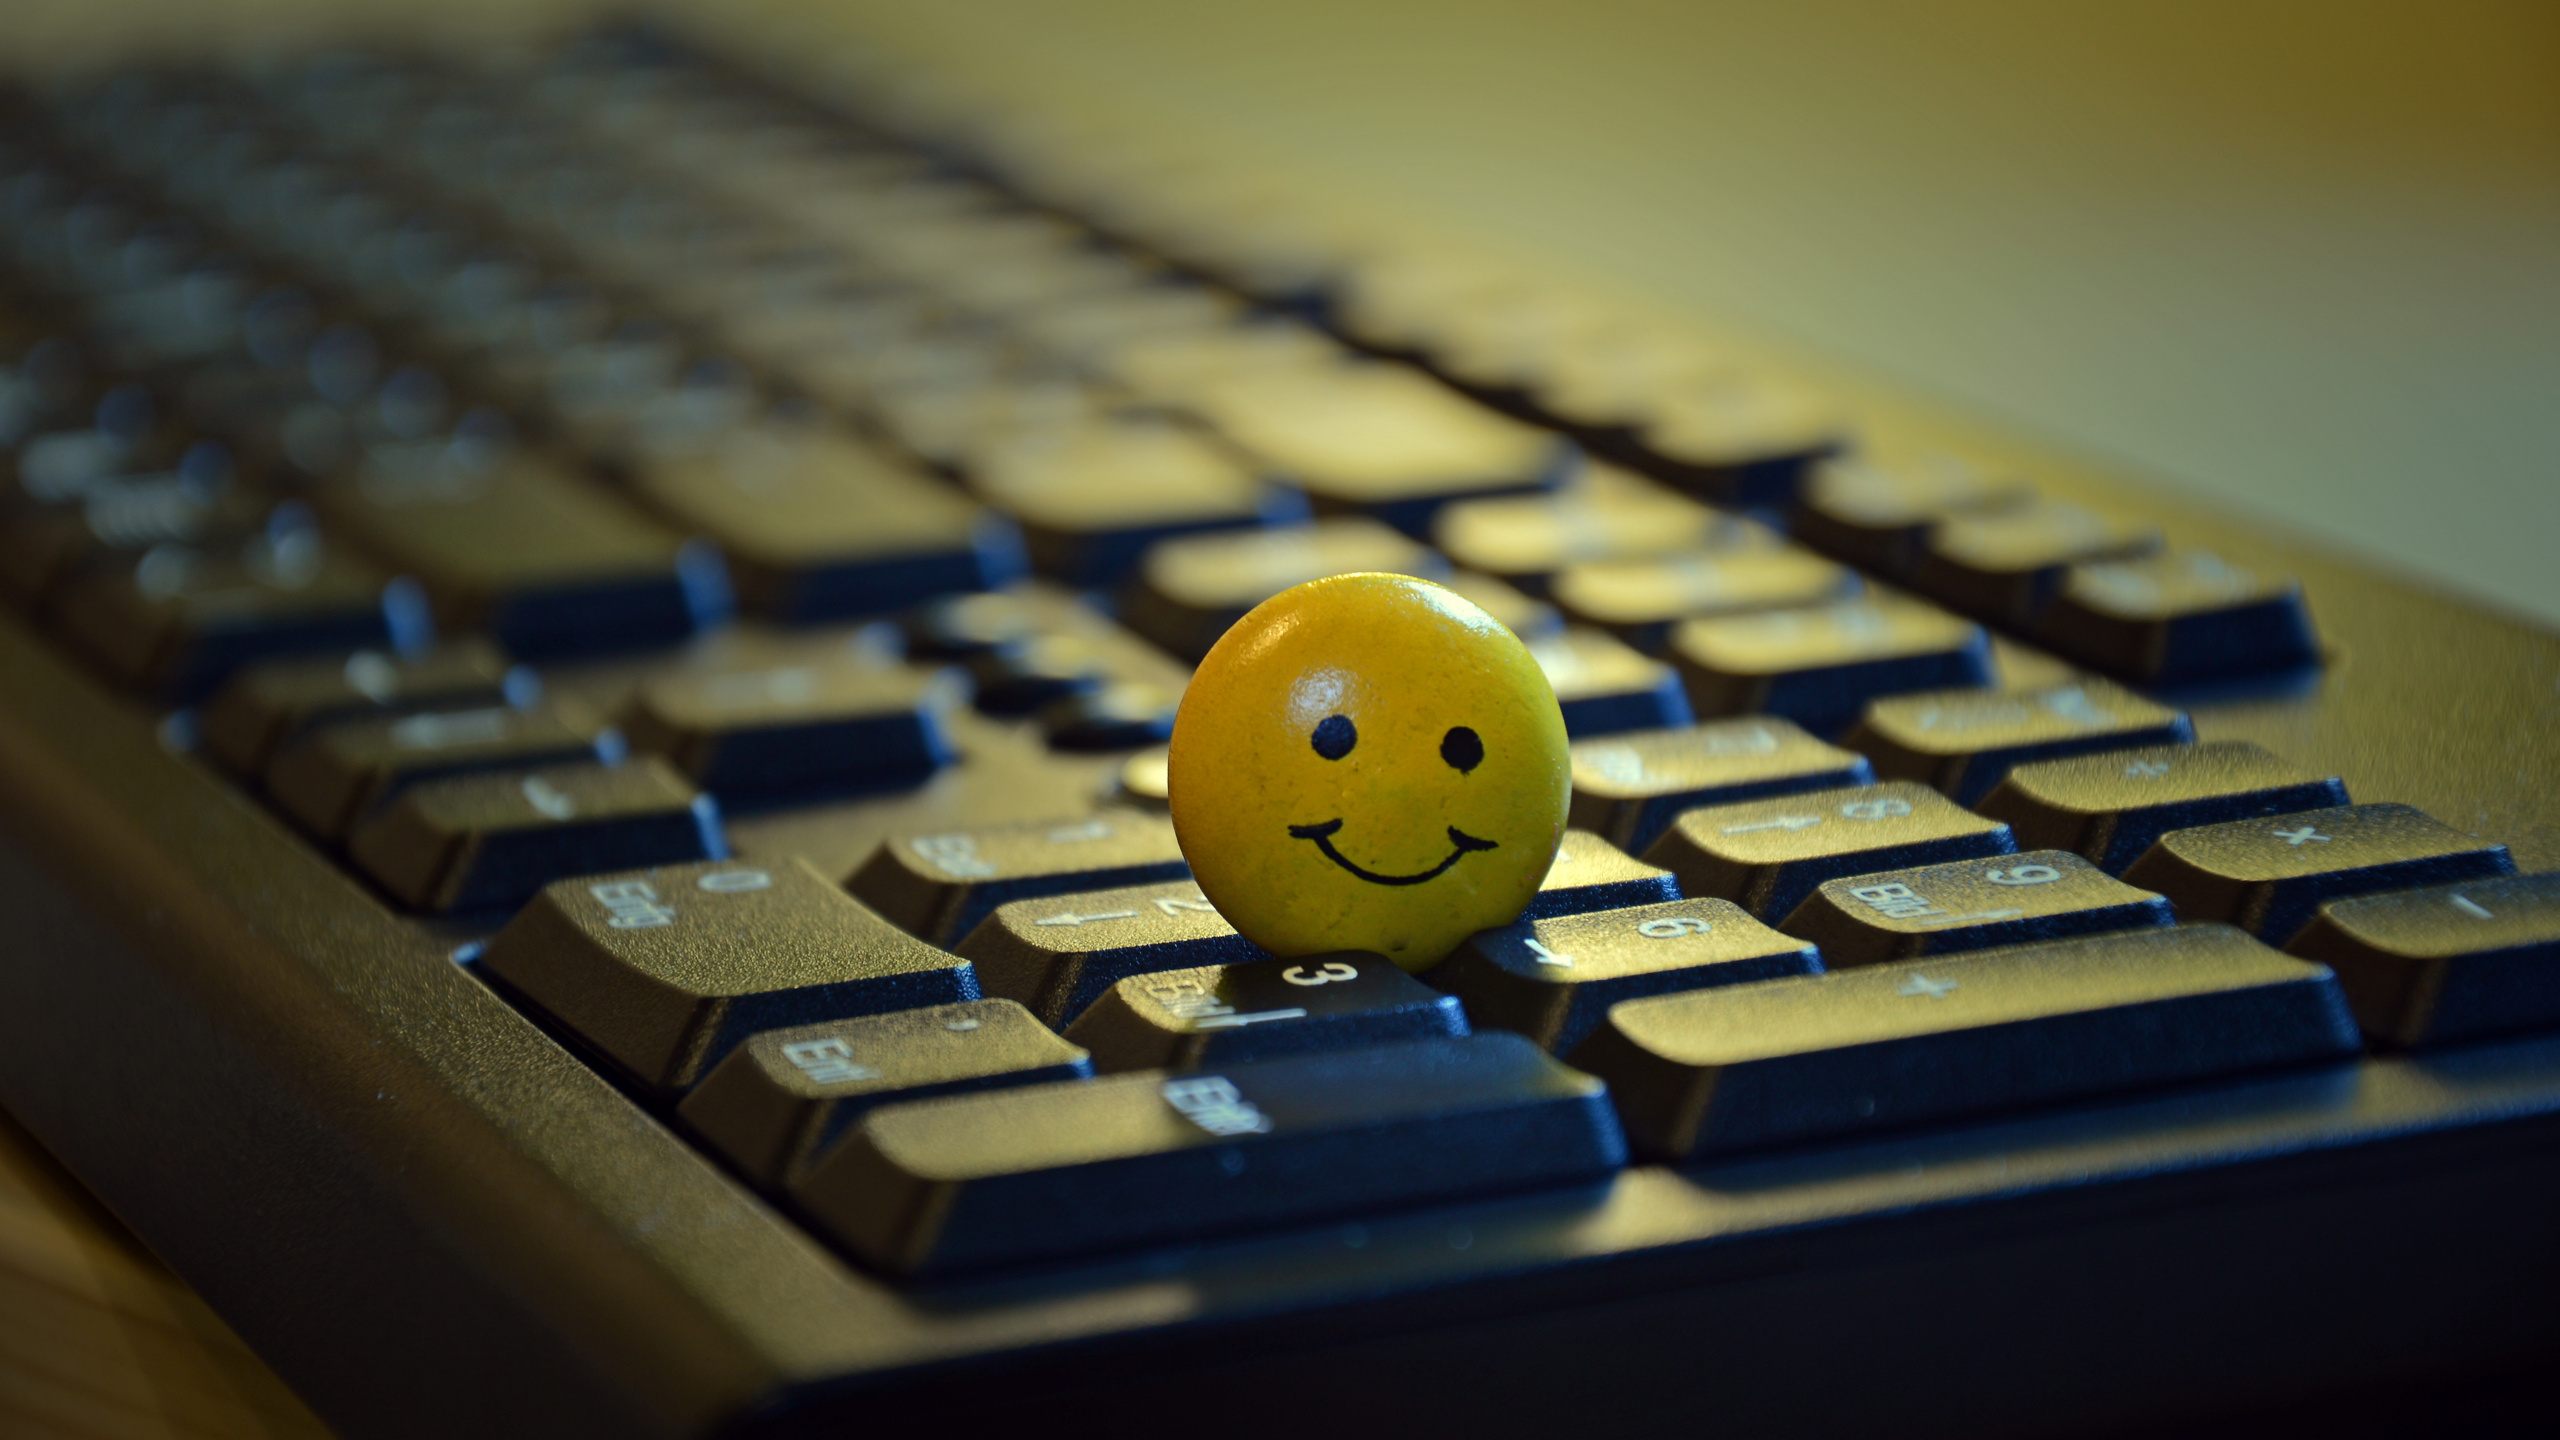 Gelber Smiley-Ball Auf Schwarzer Computertastatur. Wallpaper in 2560x1440 Resolution